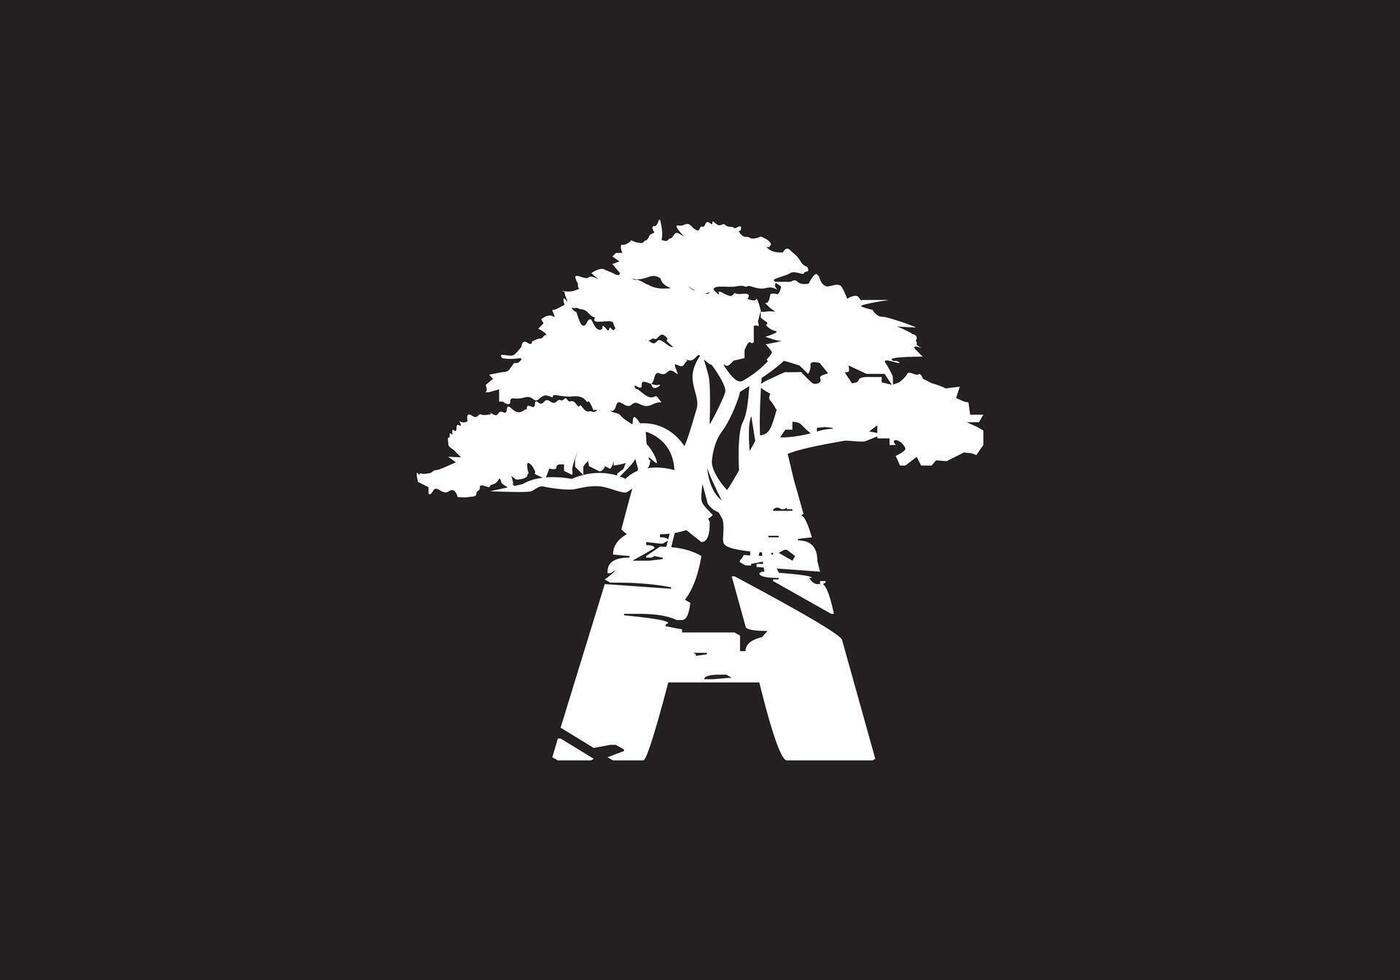 abstrato uma logotipo carta e árvore galhos com verde, preto, branco. árvore carta Projeto com minimalista criativo estilo. vetor